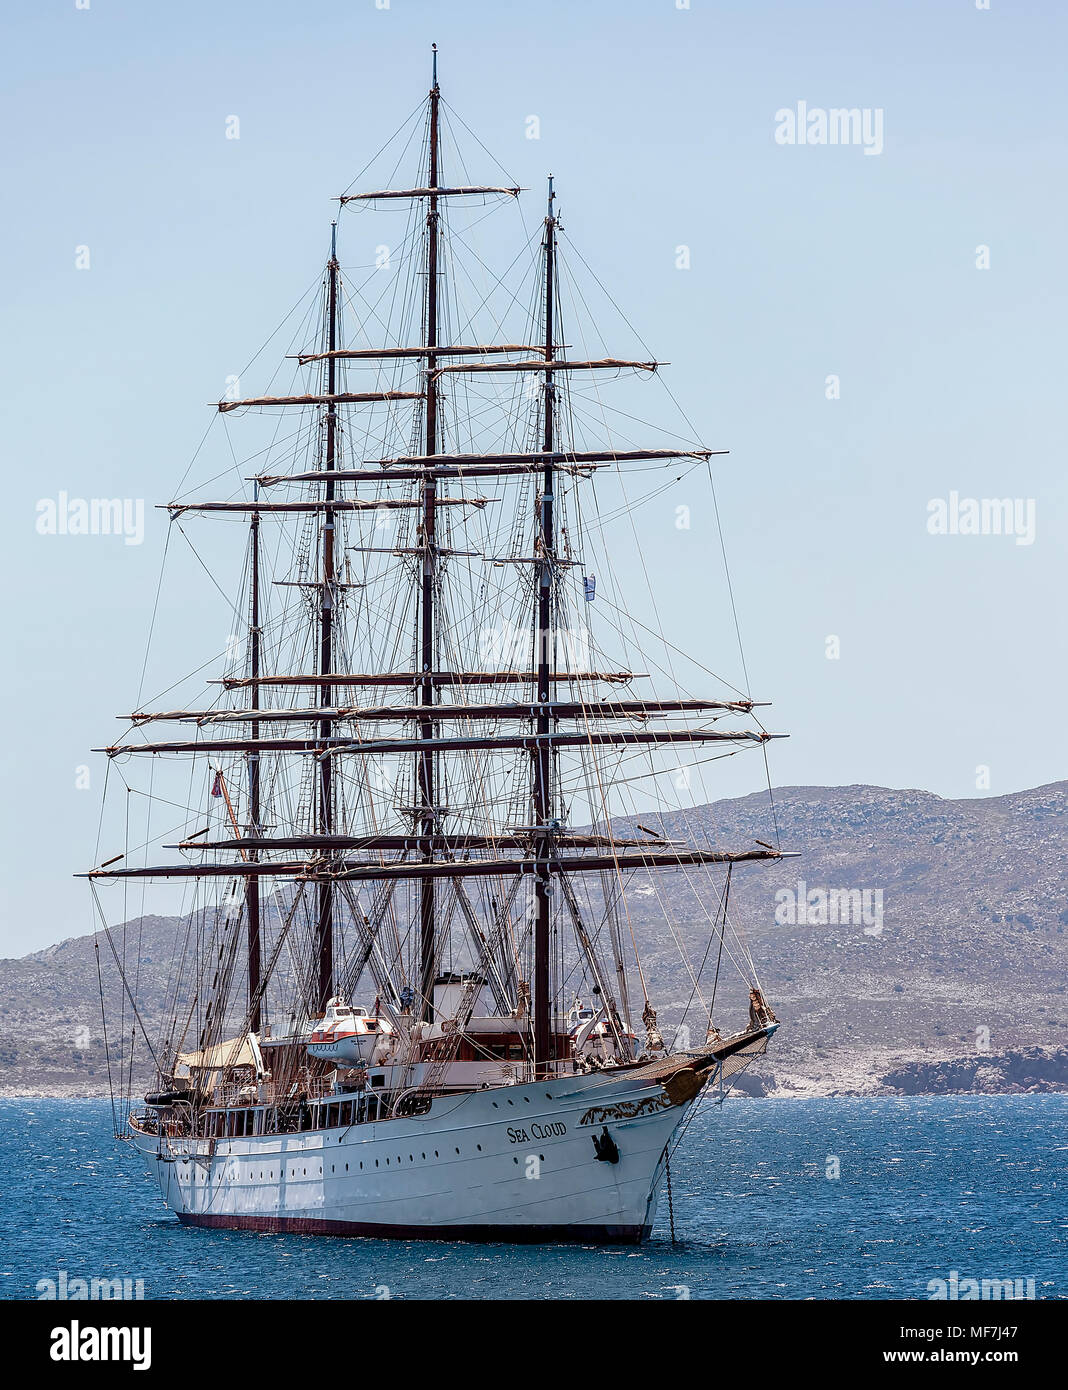 Insel Mykonos - 7. JULI: Sea Cloud ist ein historisches segeln Schiff auf das Meer. Als wetter Schiff für die United States Coast Guard und United serviert. Stockfoto